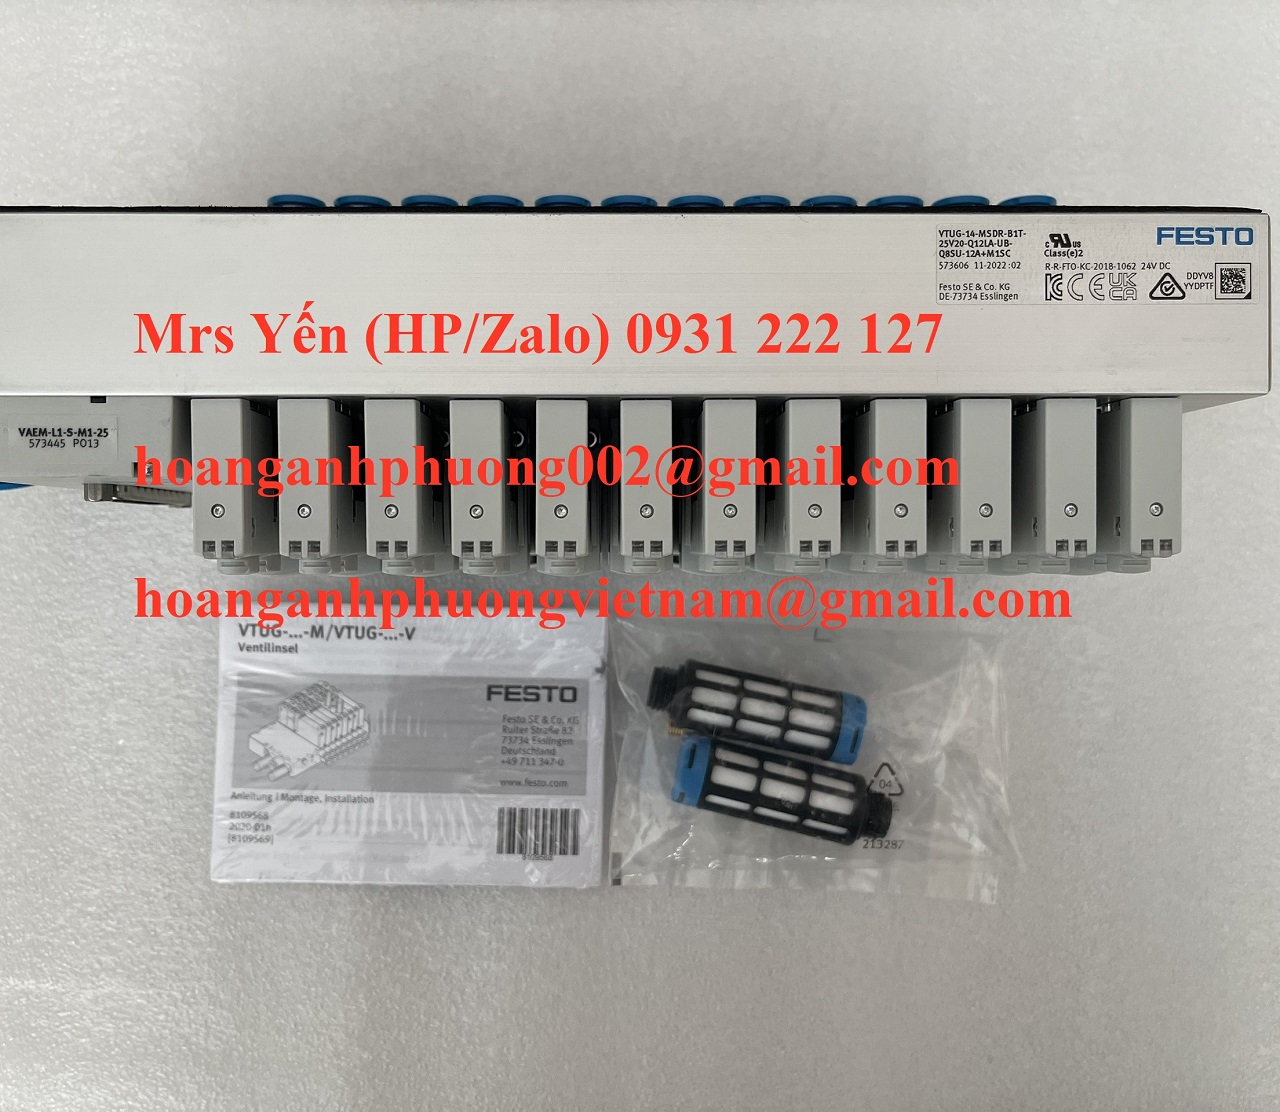 VUVG-L10-P53E-ZT-M7-1P3 van điện từ Festo mới giá tốt tại Dĩ An